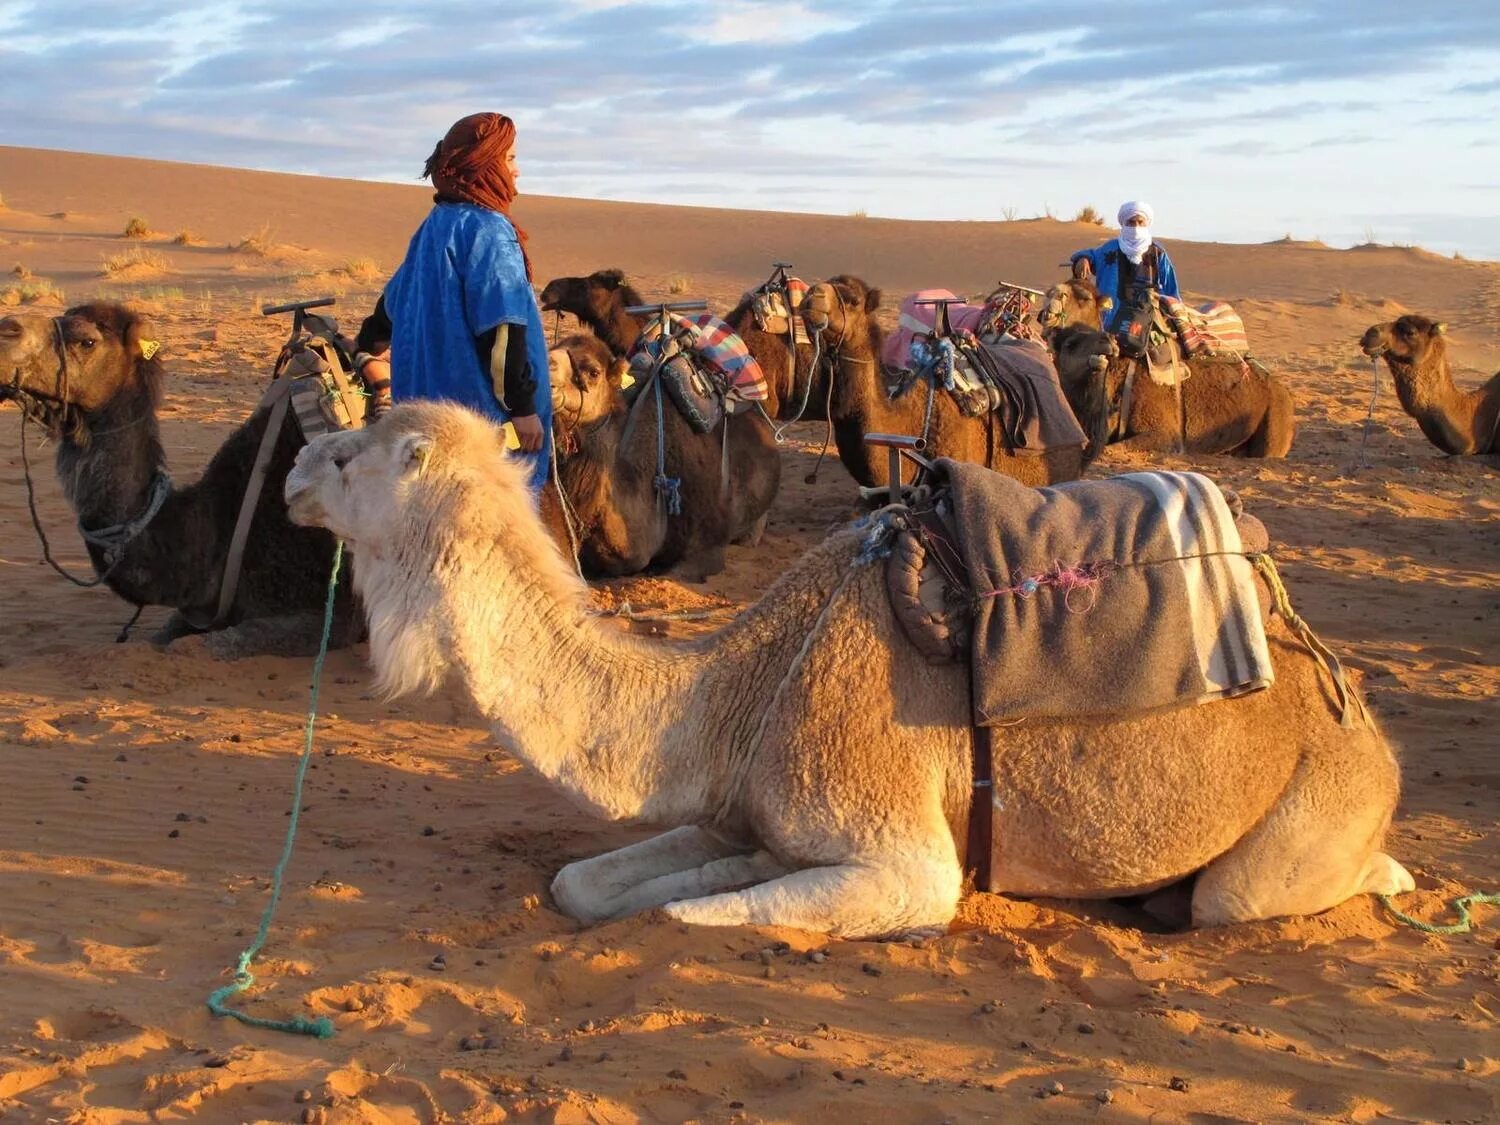 Залив караван. Бедуины Марокко. Караван в пустыне Каракум. Караваны верблюдов с бедуинами. Караван марокканских верблюдов дромедаров.